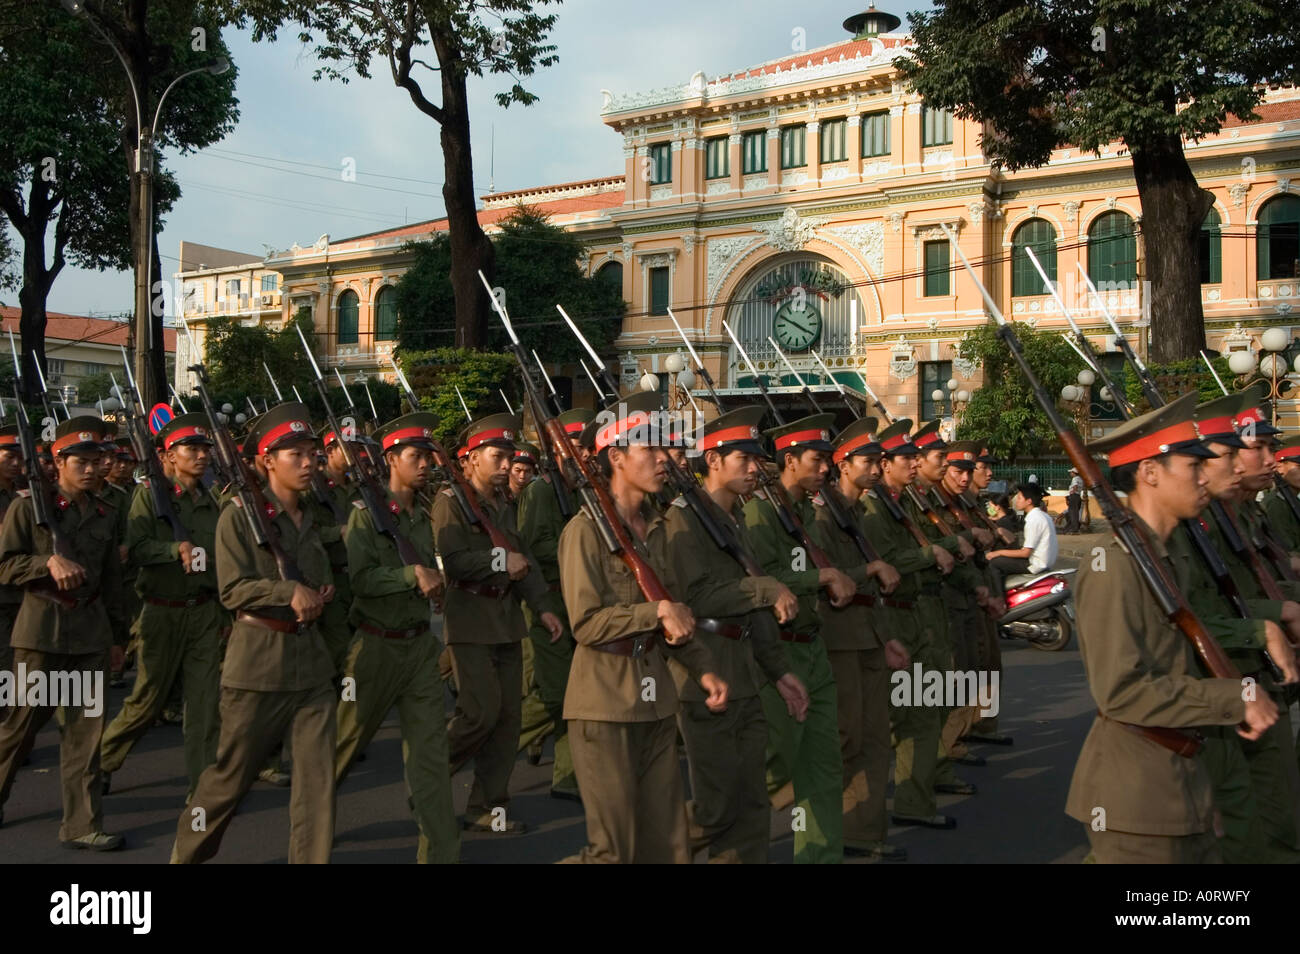 Parade militaire devant le G P O Ho Chi Minh City Saigon Vietnam Asie Asie du sud-est Banque D'Images